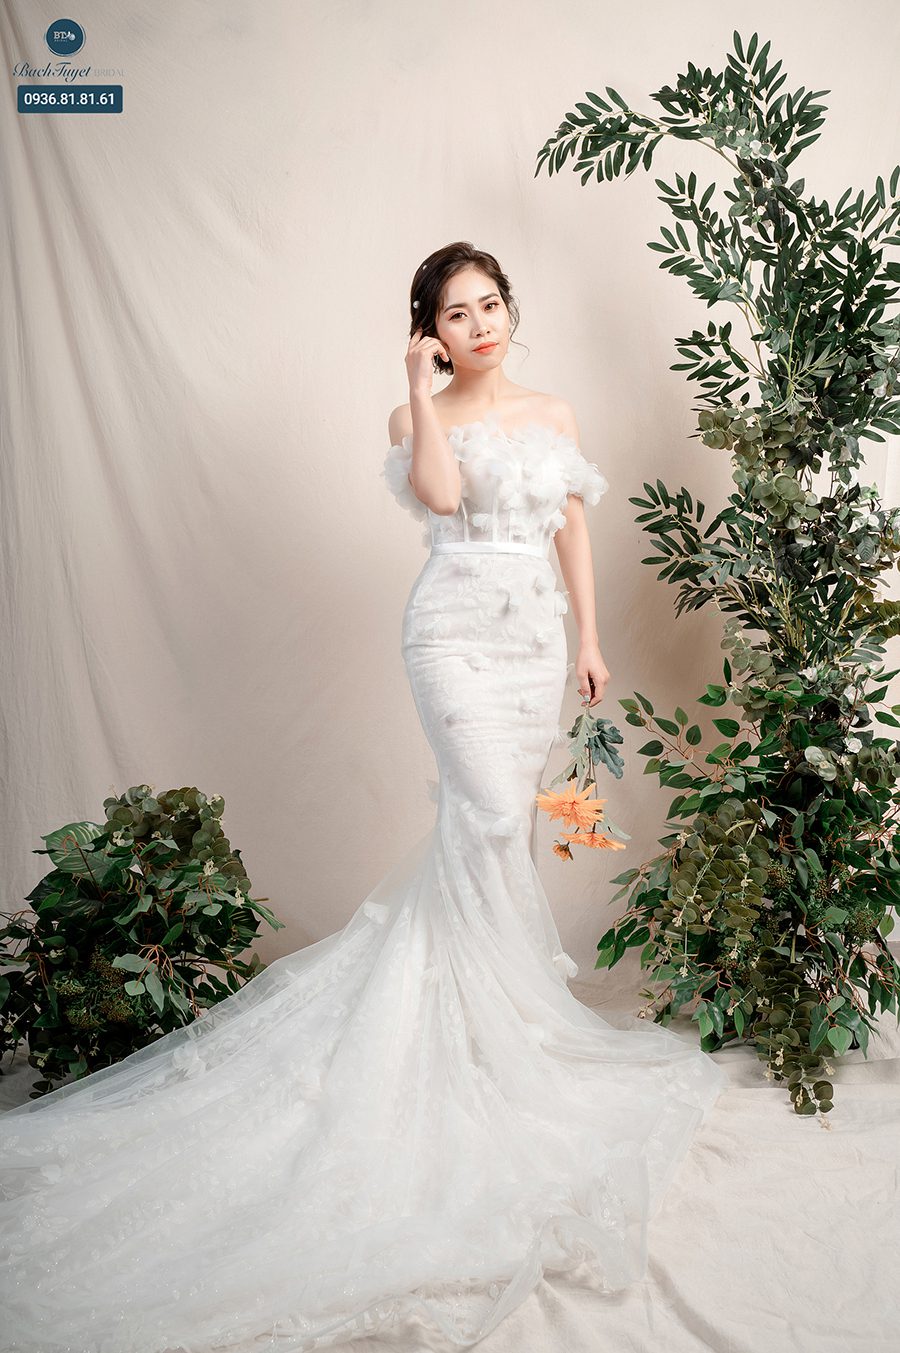 Kinh nghiệm chọn váy cưới khi chụp ảnh cưới - Thoong Studio - Chụp ảnh cưới  chuyên nghiệp